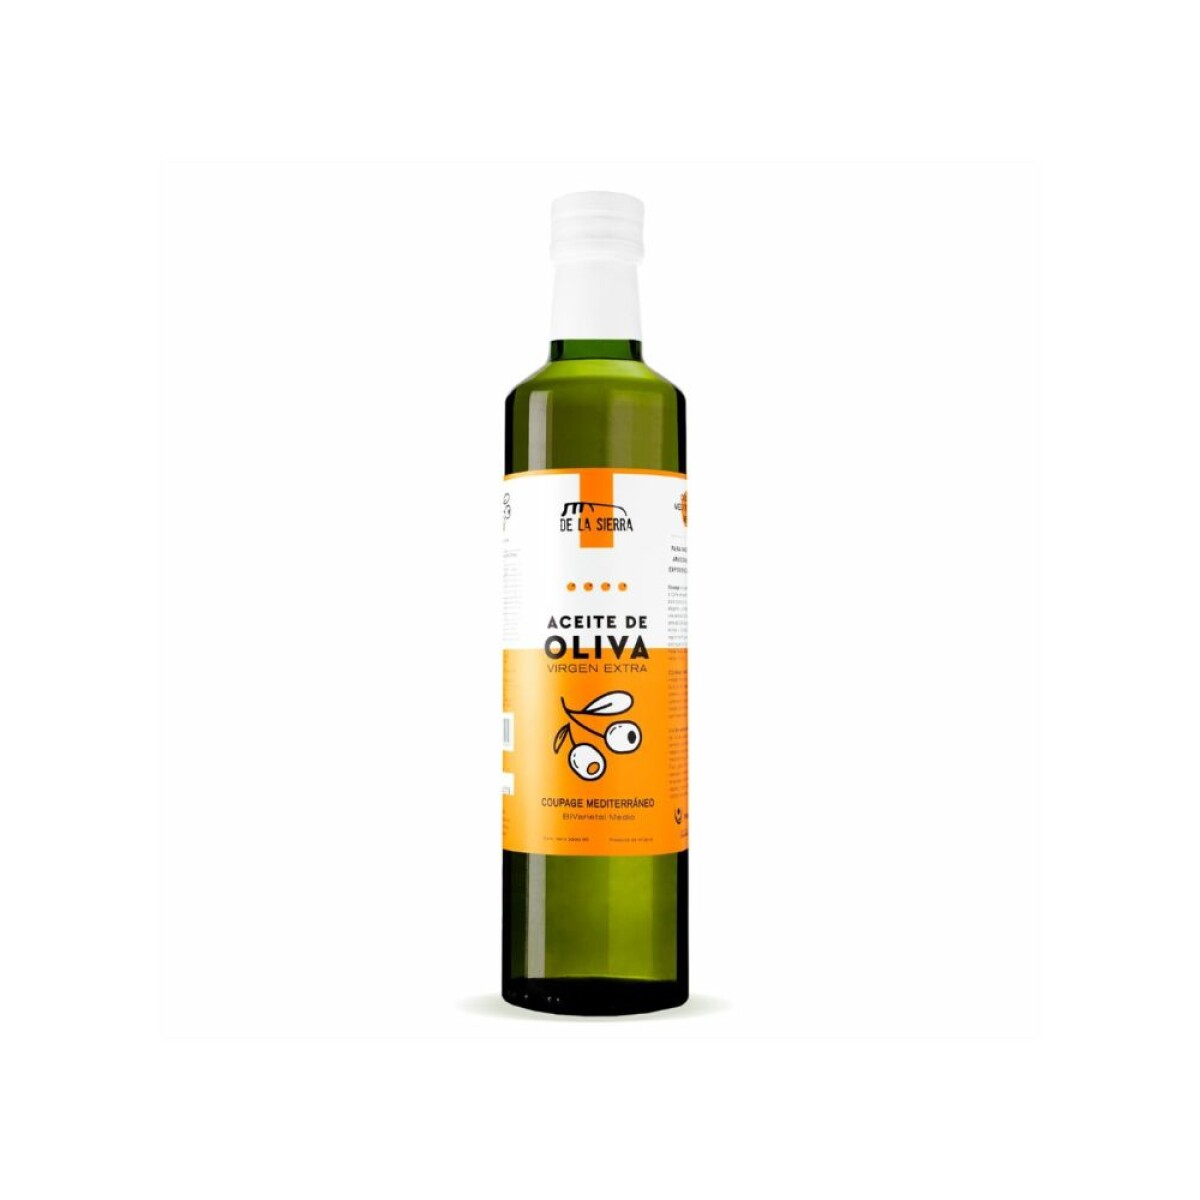 Aceite de oliva coupage mediterráneo 1lt De la Sierra 